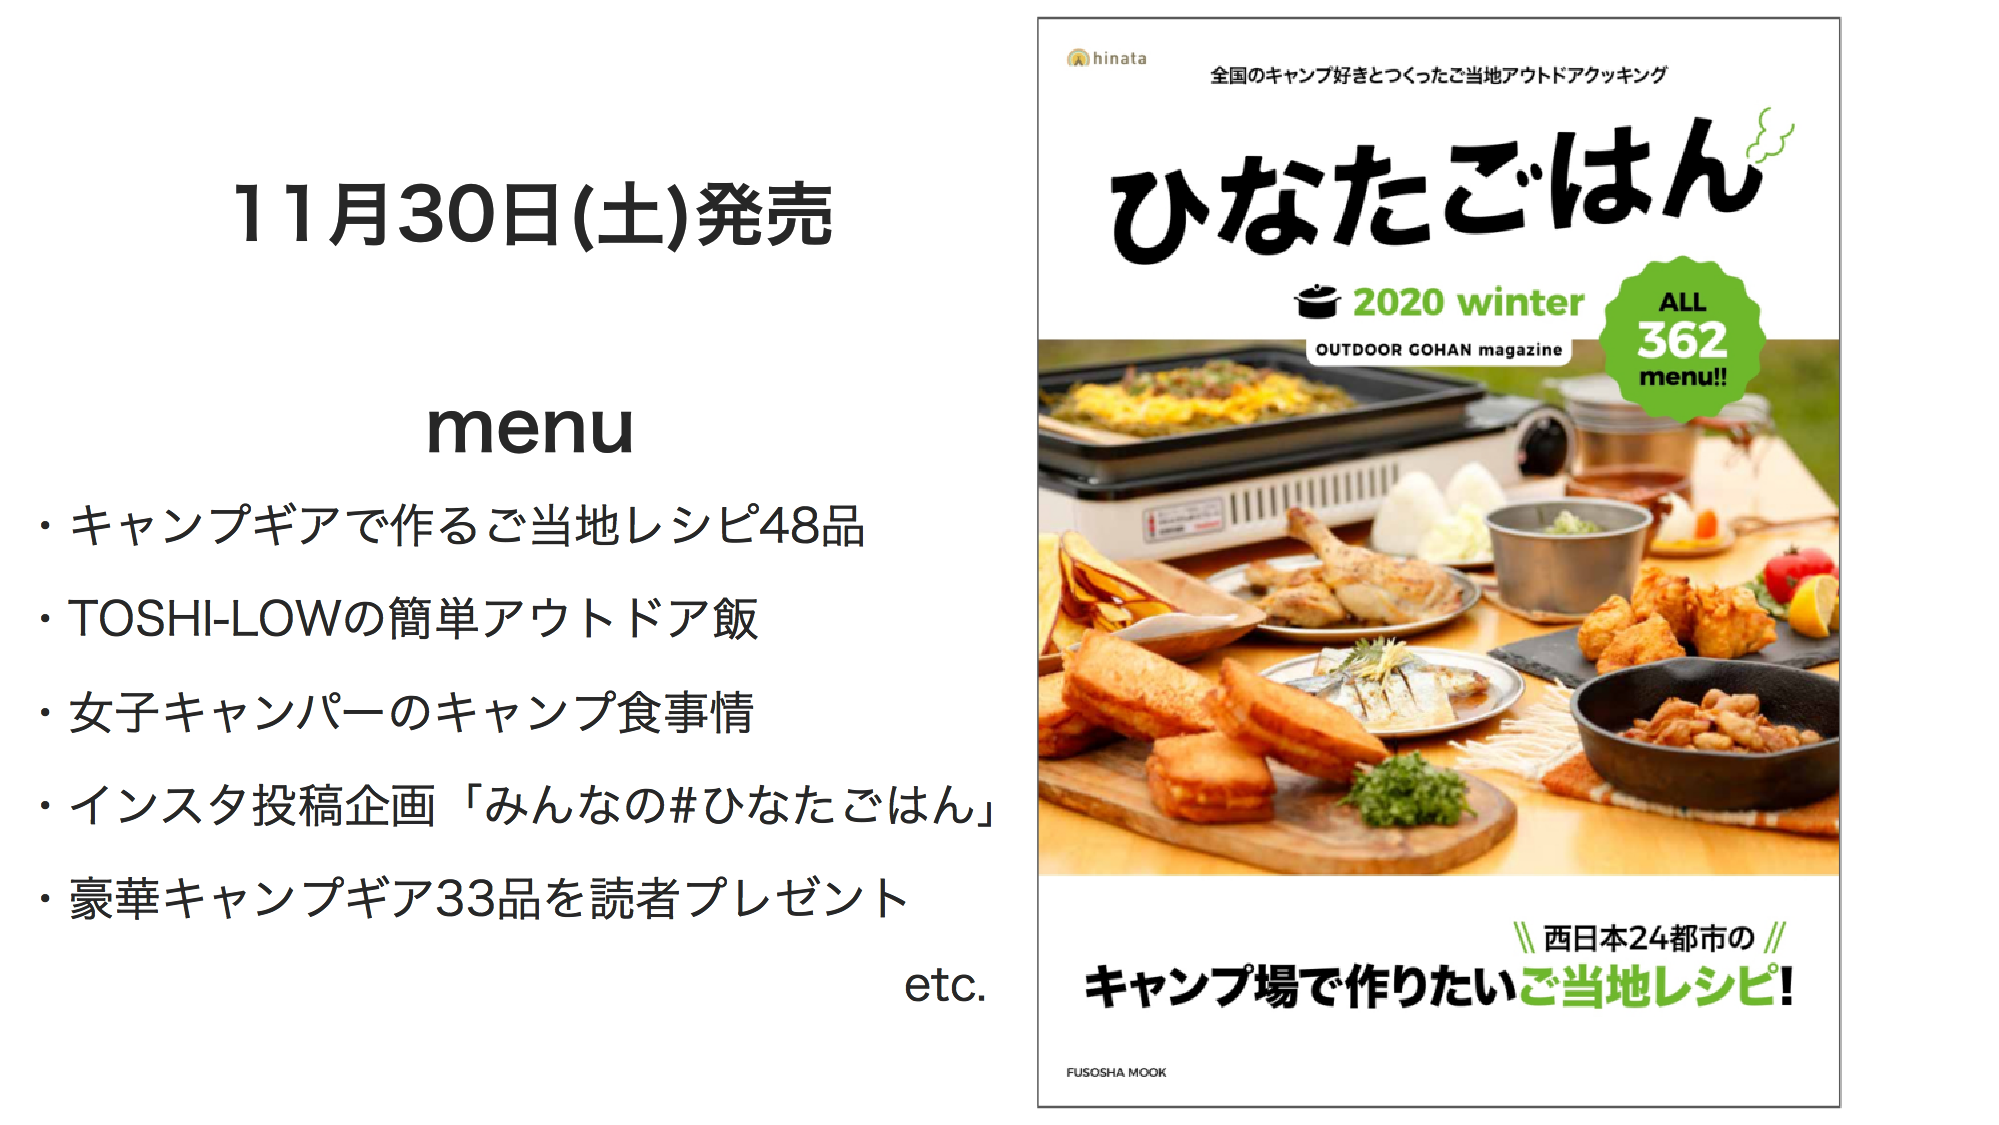 アウトドアwebマガジン Hinata が キャンプ料理のレシピ本 ひなたごはん Winter を11月30日に発売 Vivit株式会社のプレスリリース